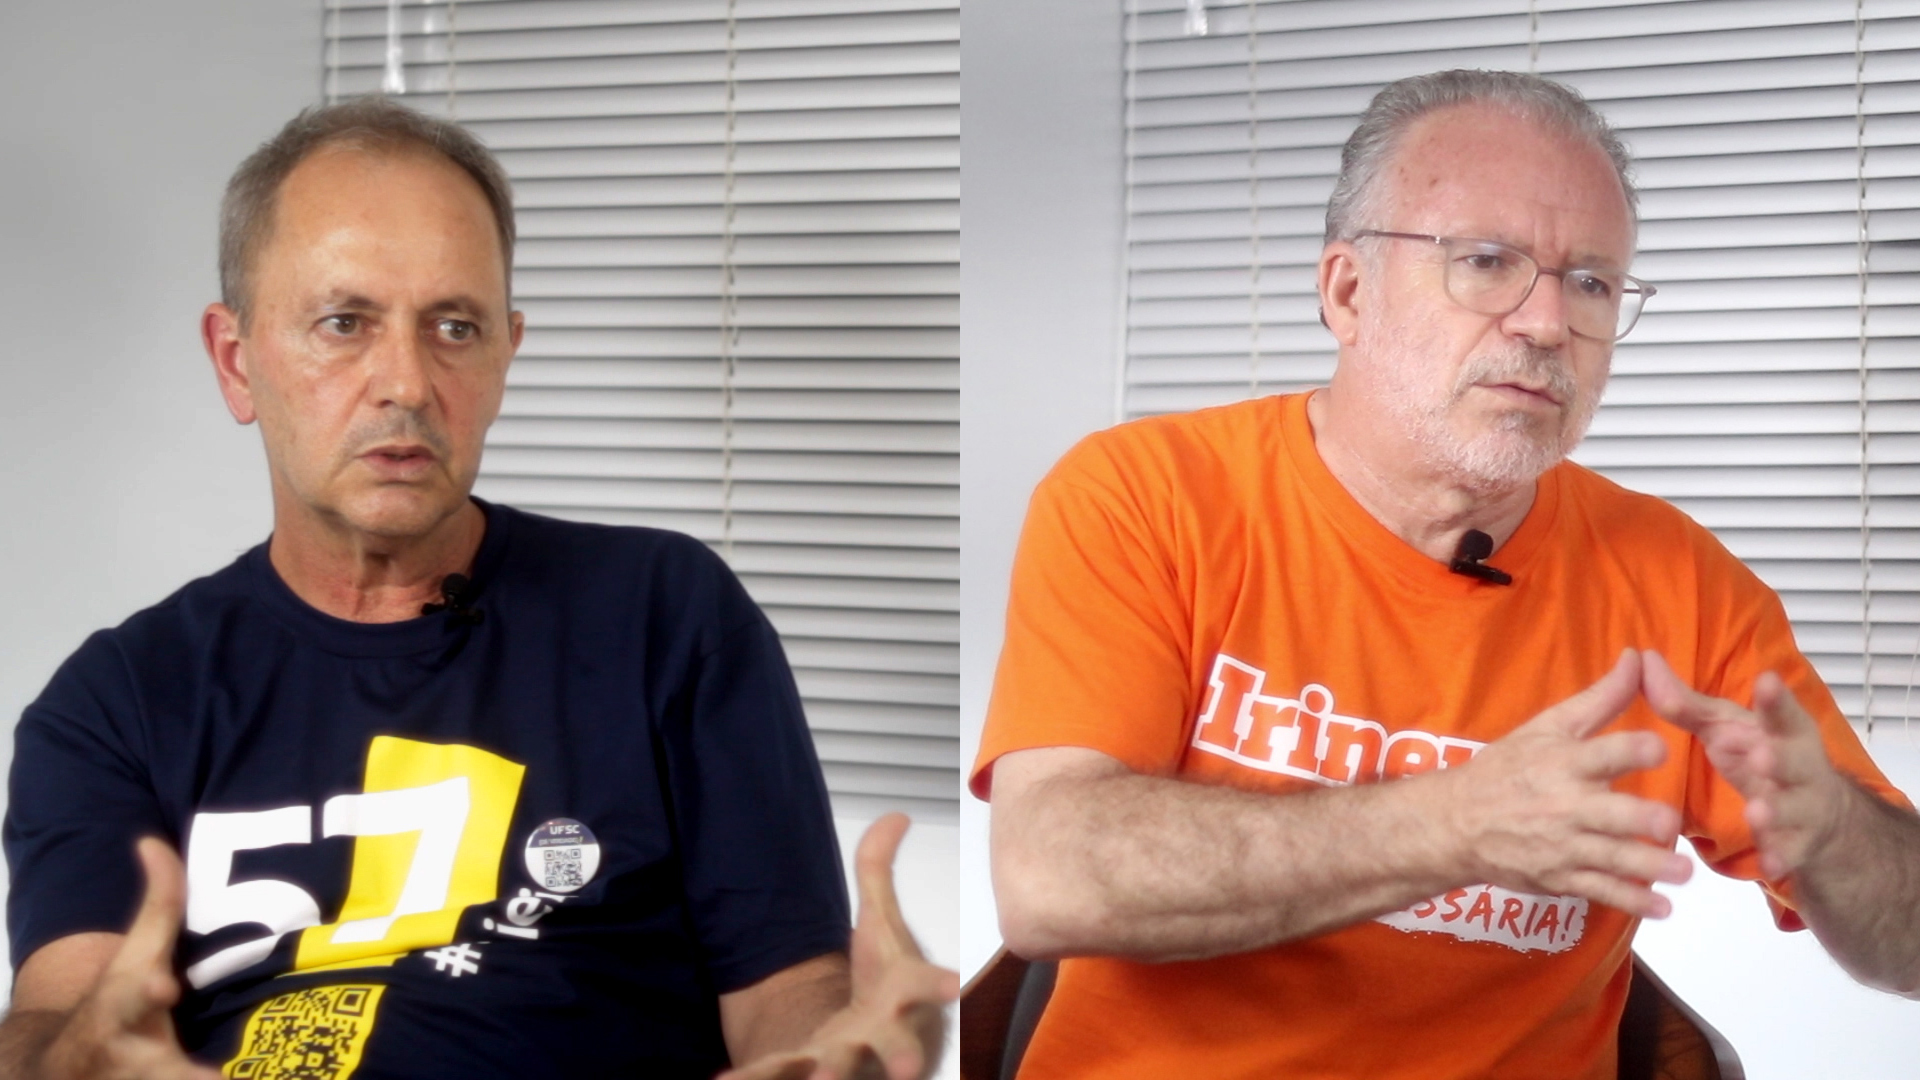 Edson de Pieri e Irineu Manoel de Souza candidatos a reitor da UFSC em 2018